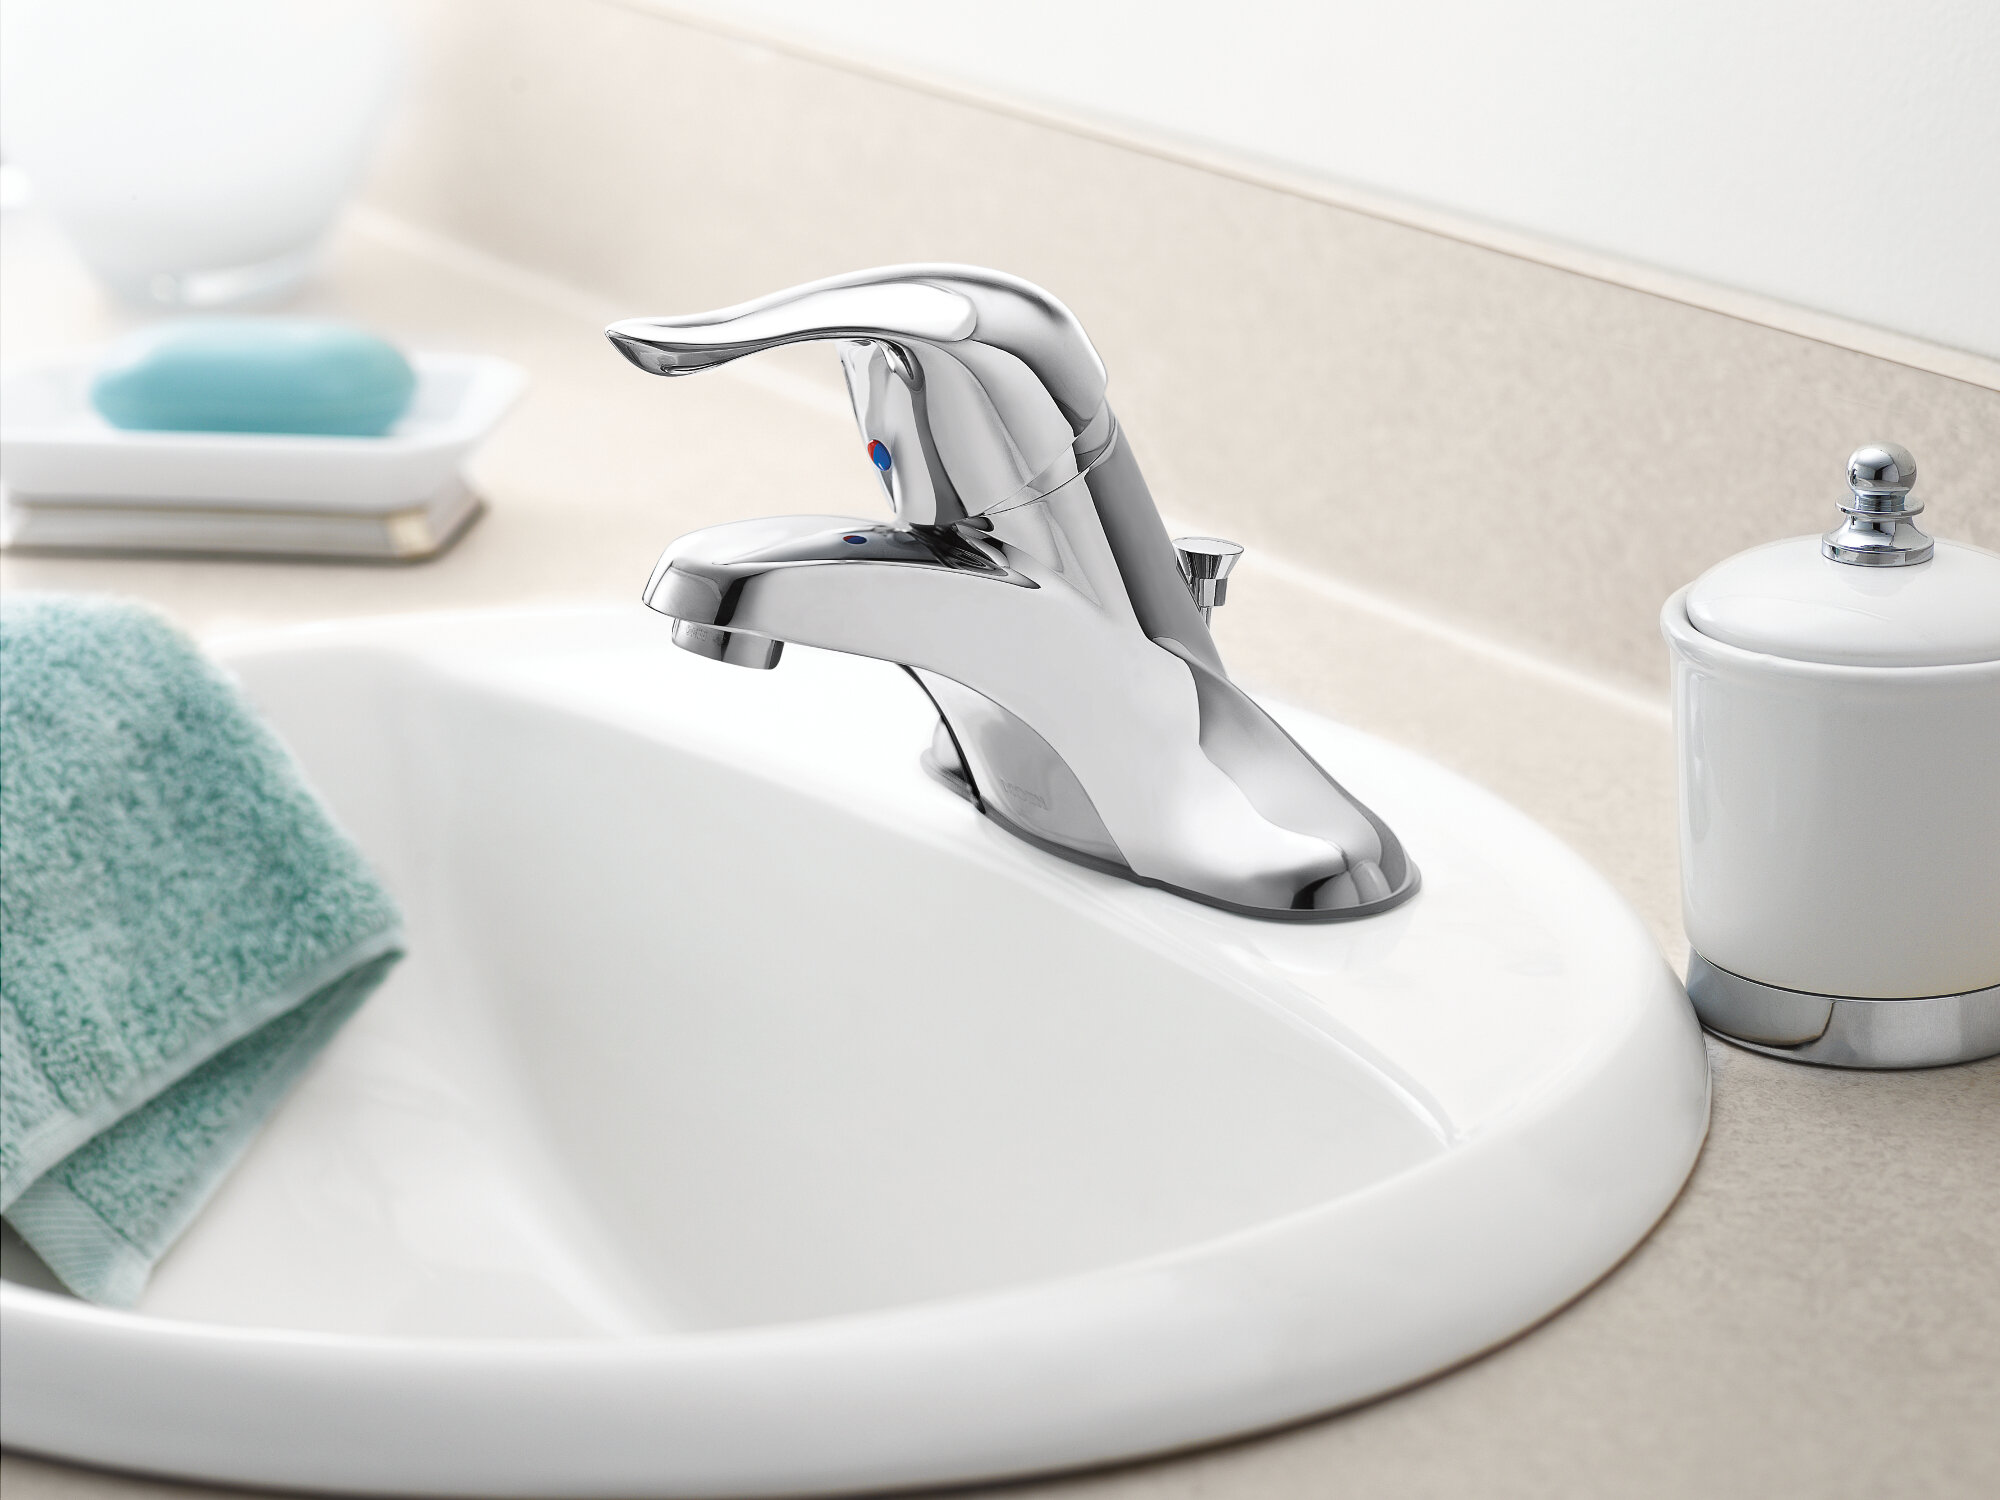 Moen L4625 Chateau Centerset Bathroom Faucet Chrome for sale online 